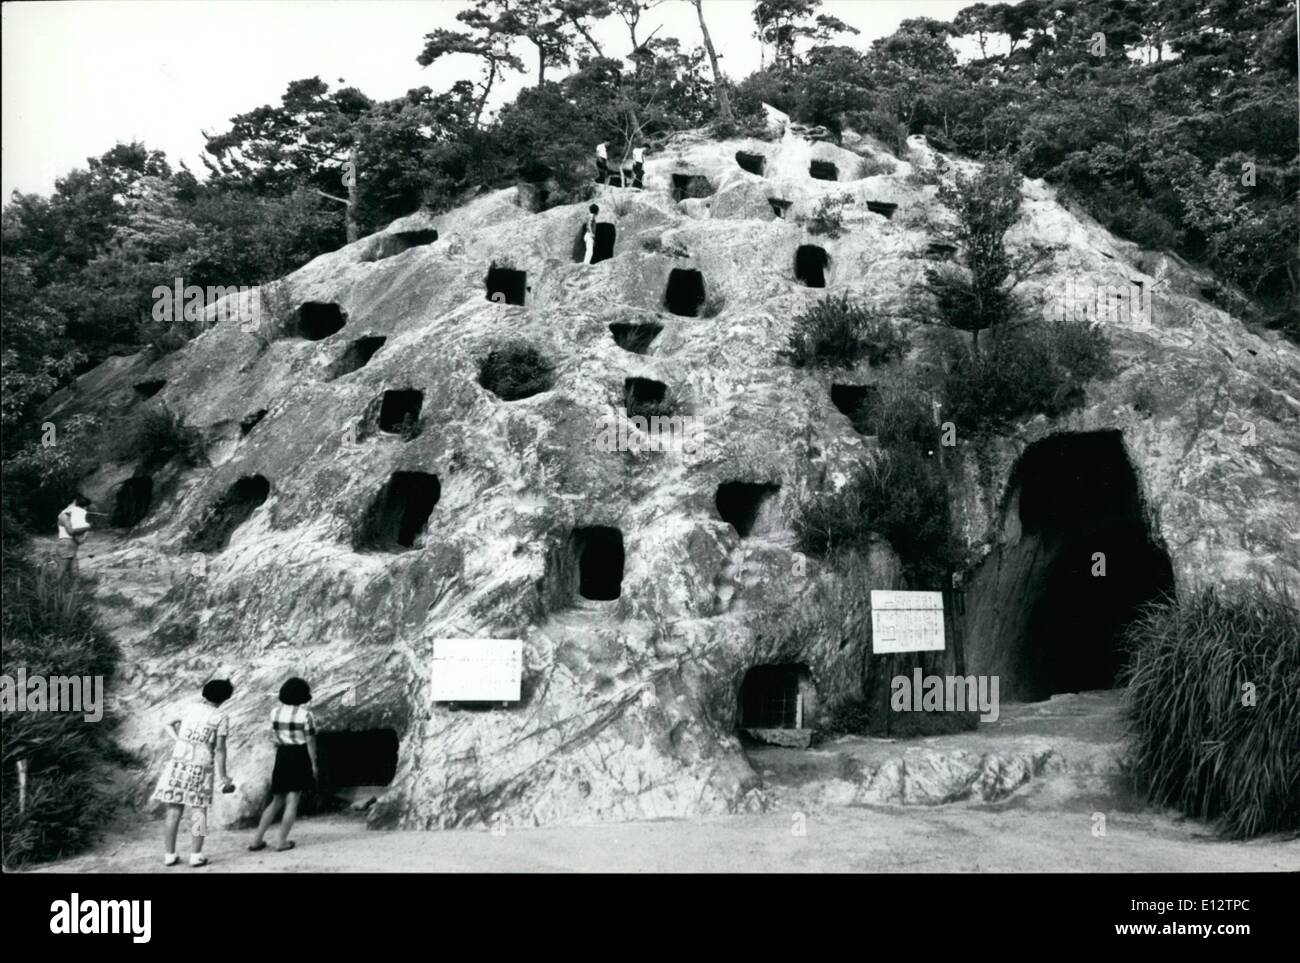 25 février 2012 - japonais ancien lieu de sépulture. Un ancien site funéraire, connu sous le nom de 100 trous de Yoshimi , environ 60 kms de Tokyo, est en train de devenir un Ã¢â'¬Ëoemust" pour chercheurs invités de l'histoire ancienne de l'étranger. Les grottes uniques fouillée par le professeur Masagoro Tsuboi de l'Université de Tokyo. En 1888, date du 7ème siècle. Chaque grotte est la tombe d'une personne de haut rang, sa famille et ses serviteurs, et comprend trois galeries pour les morts, et d'une salle de cérémonie. Anciens écrits sont gravés sur les murs de la Grottes, creusées dans la roche Banque D'Images